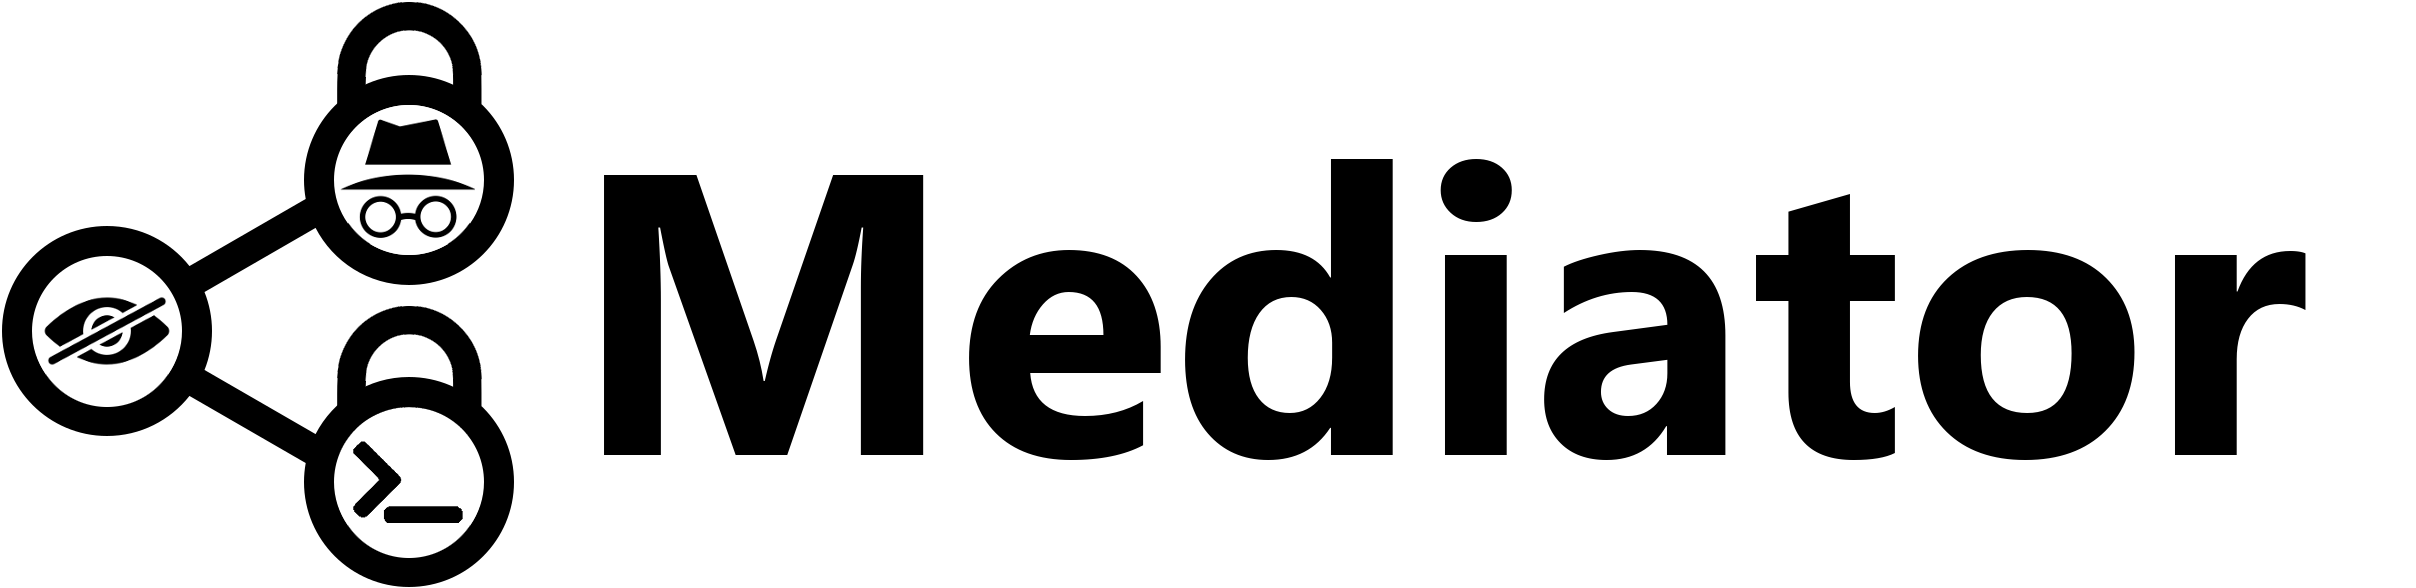 mediator logo